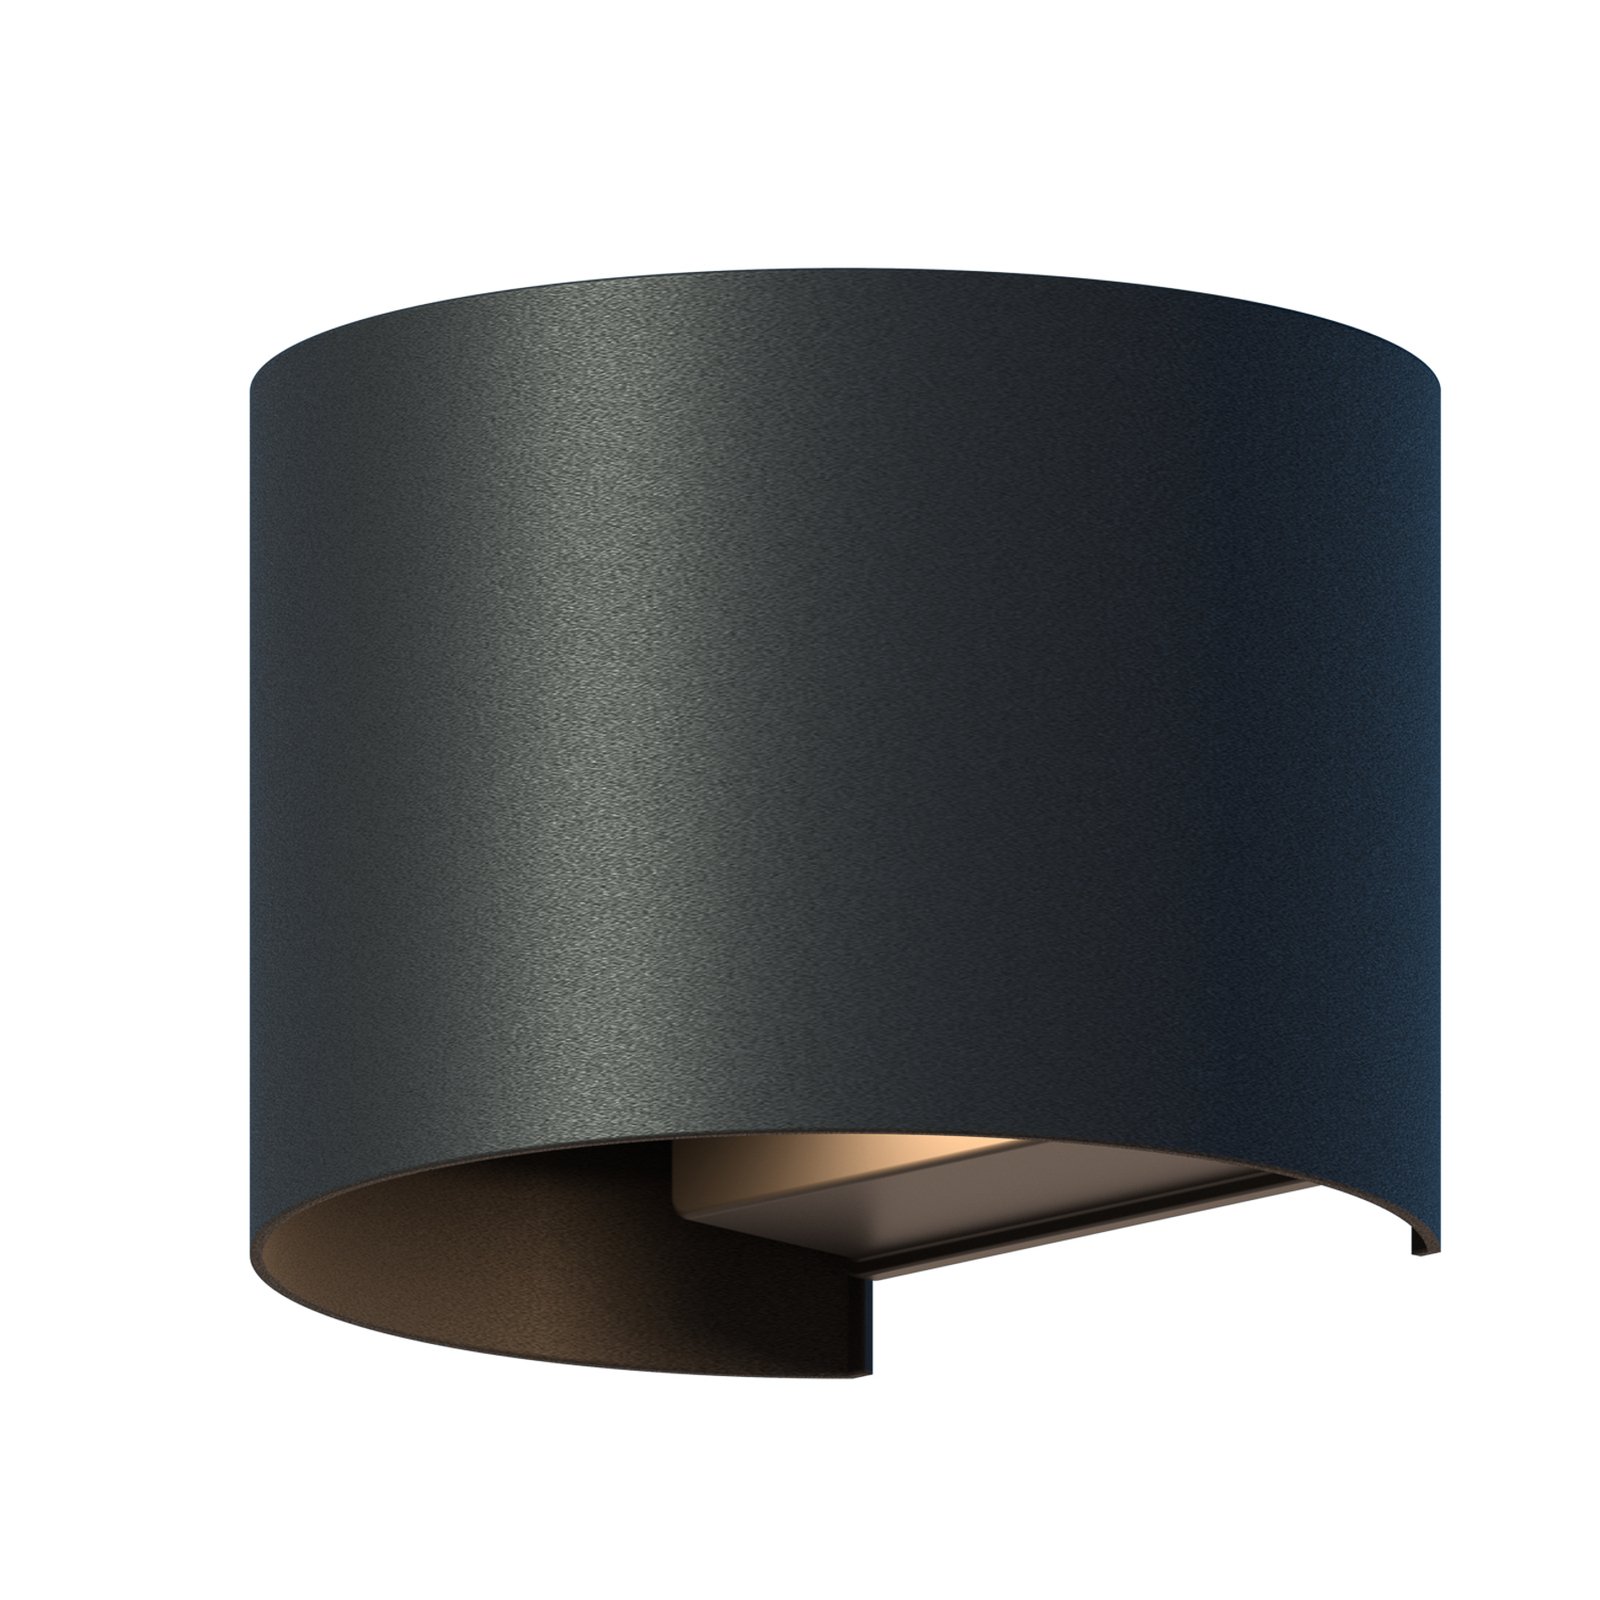 Aplique para exterior LED Calex Oval, Up/down, altura 10 cm, negro